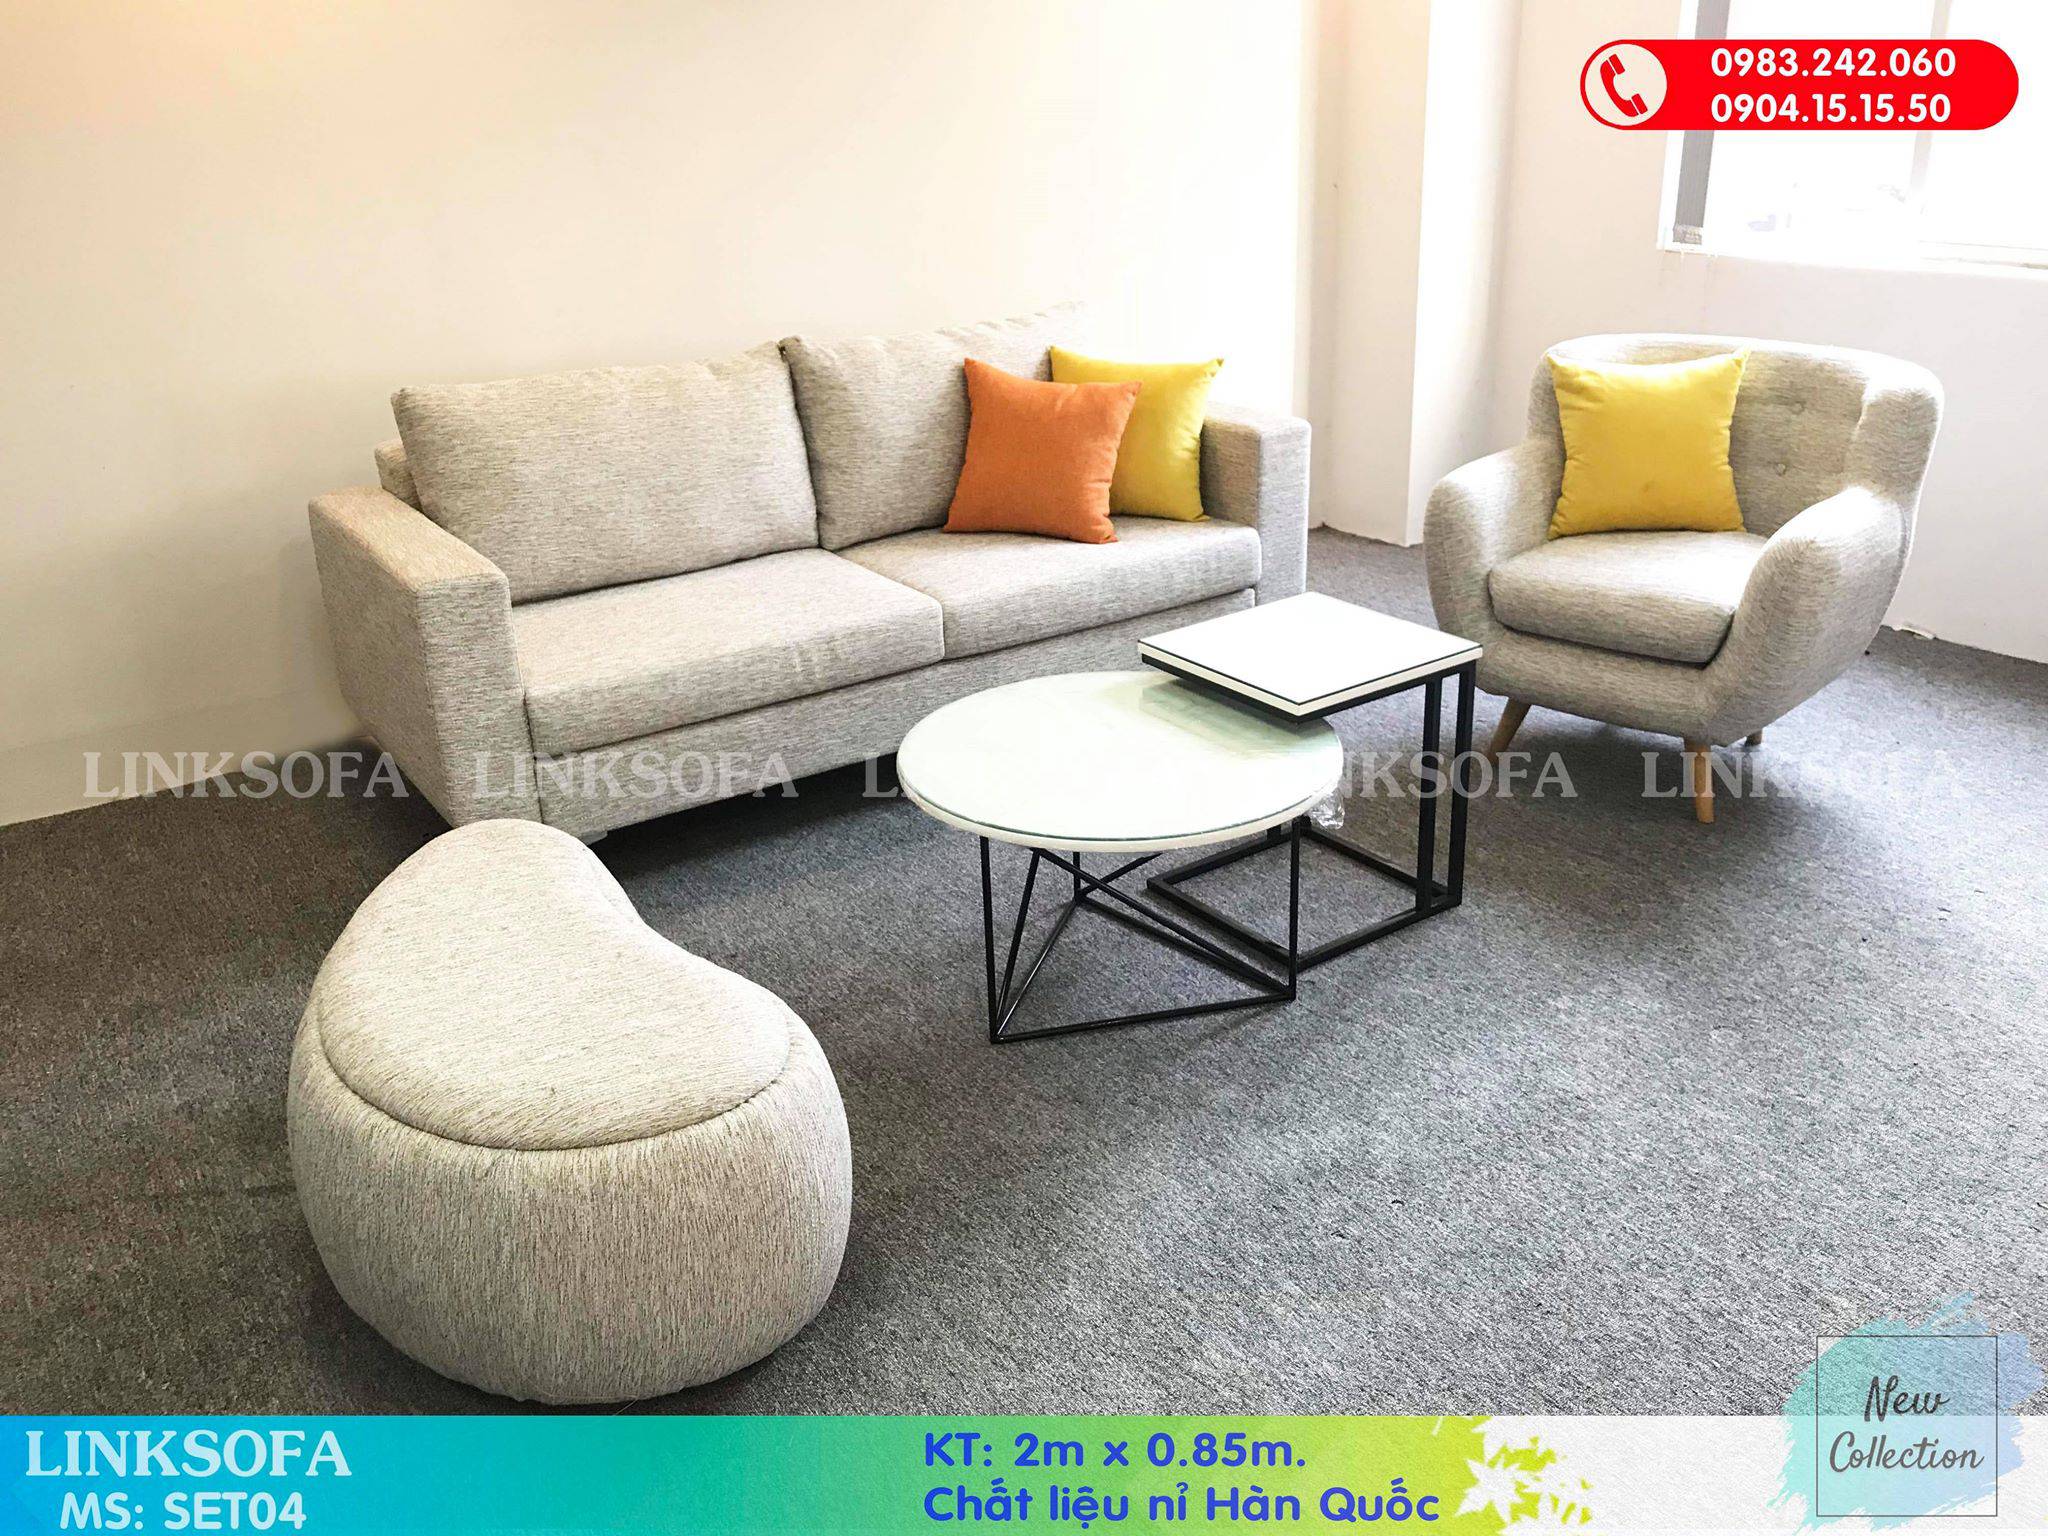 Hướng dẫn cách chọn sofa cho phòng khách - Link Sofa